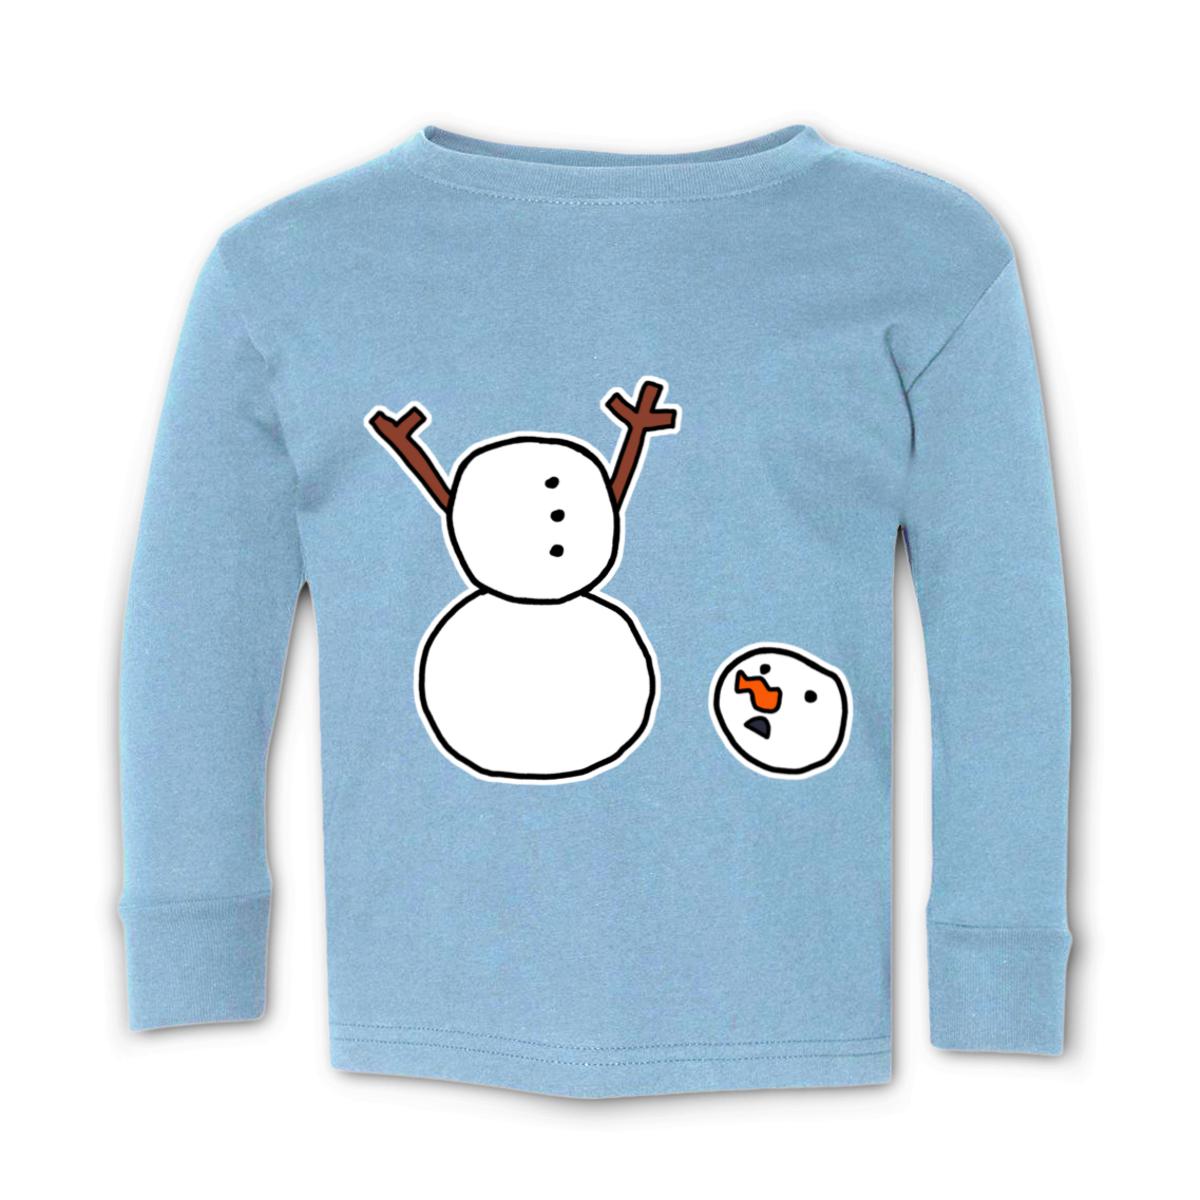 Headless Snowman Toddler Long Sleeve Tee 2T light-blue